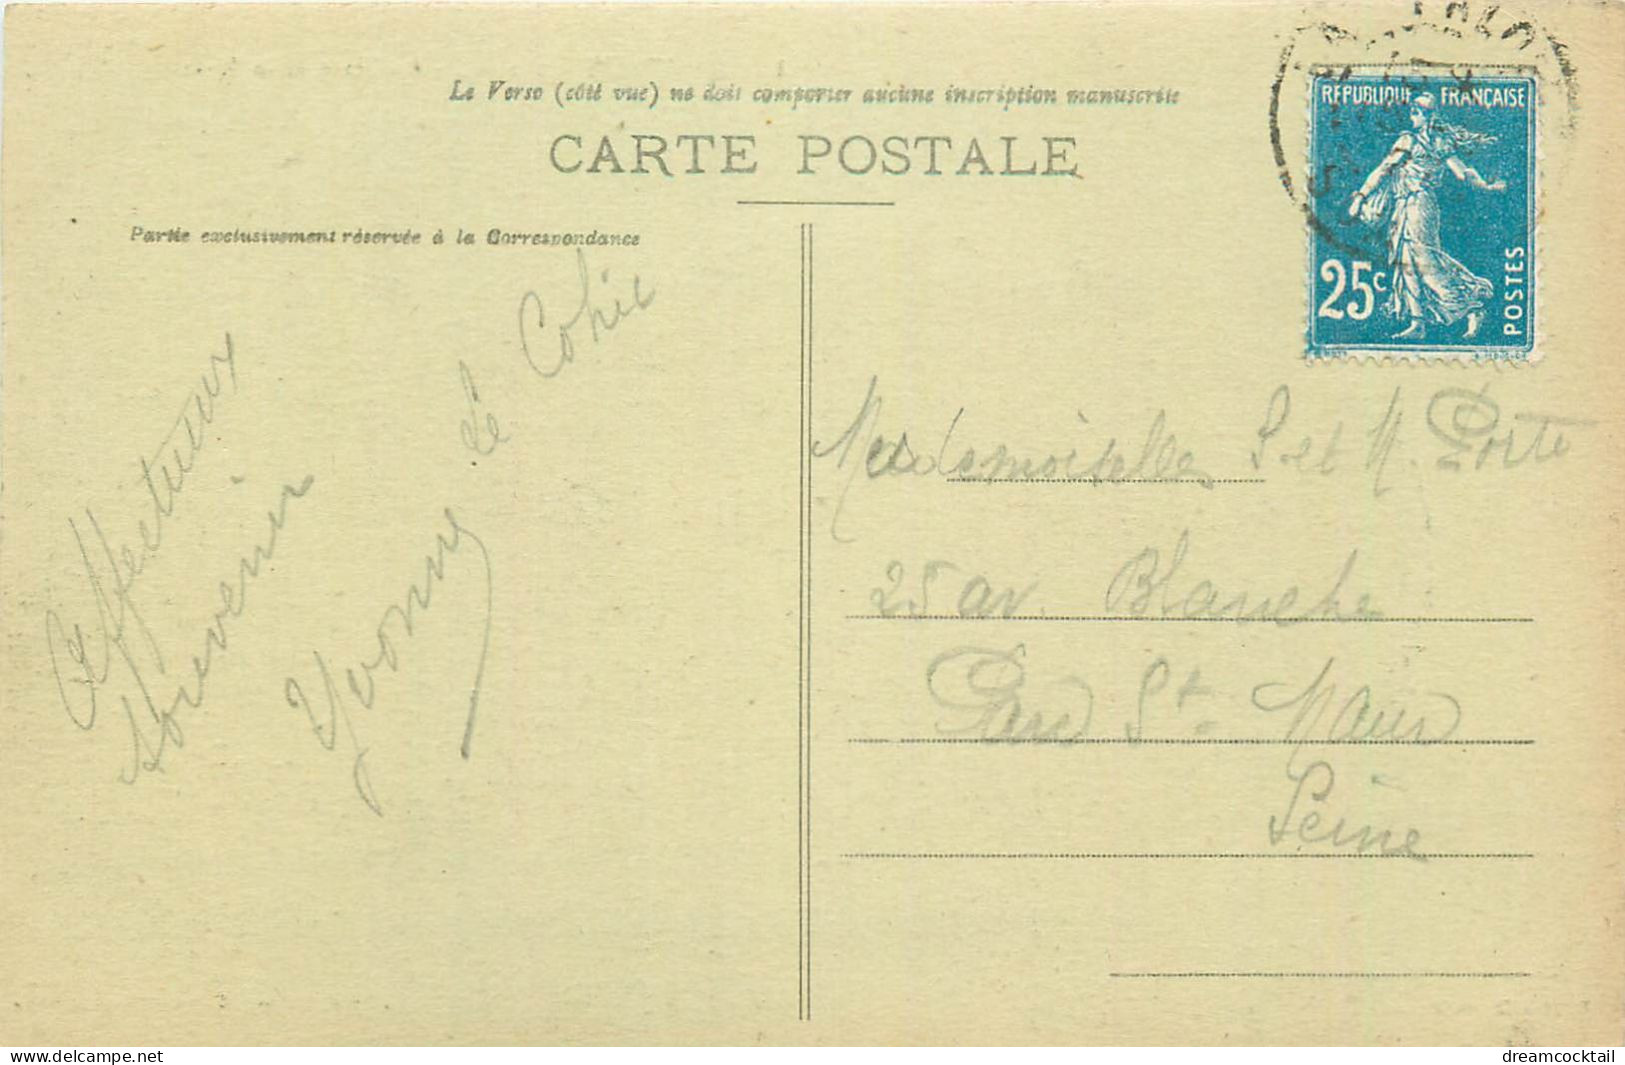 (S) Superbe LOT n°12 de 50 cartes postales anciennes sur toute la France